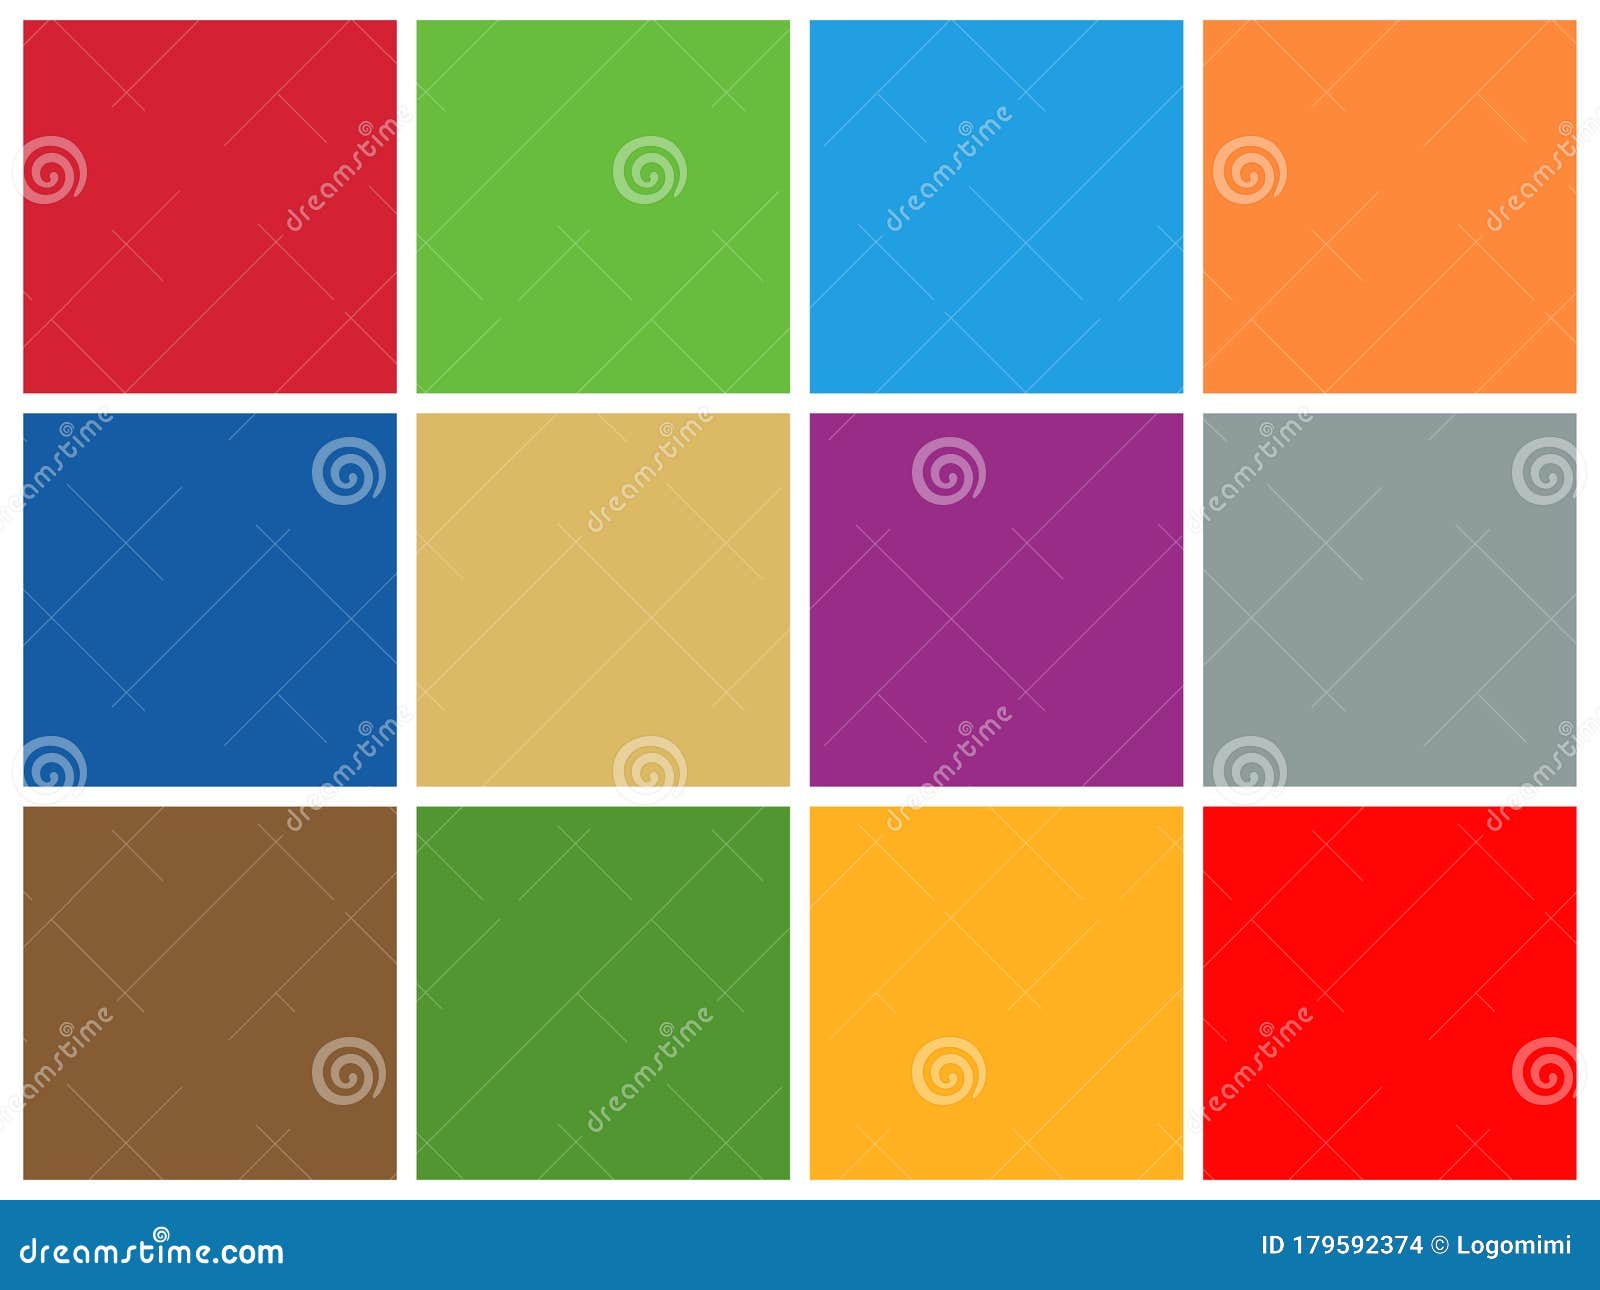 Color scheme palette image  Logo color schemes, Color schemes, Logo color